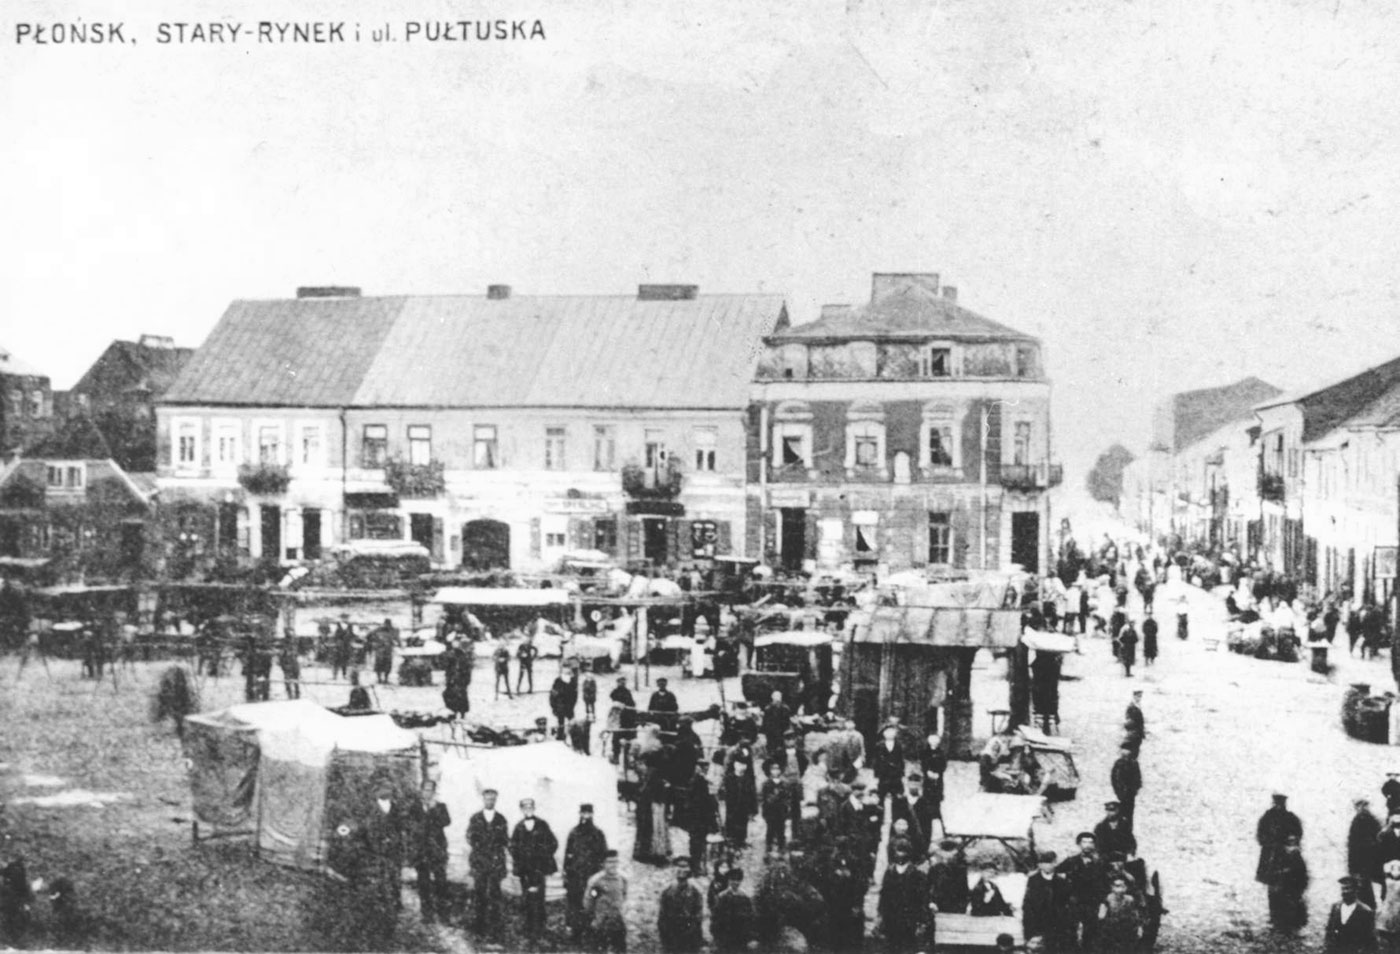 פלונסק, כיכר השוק הישן ברחוב פולטוסקר